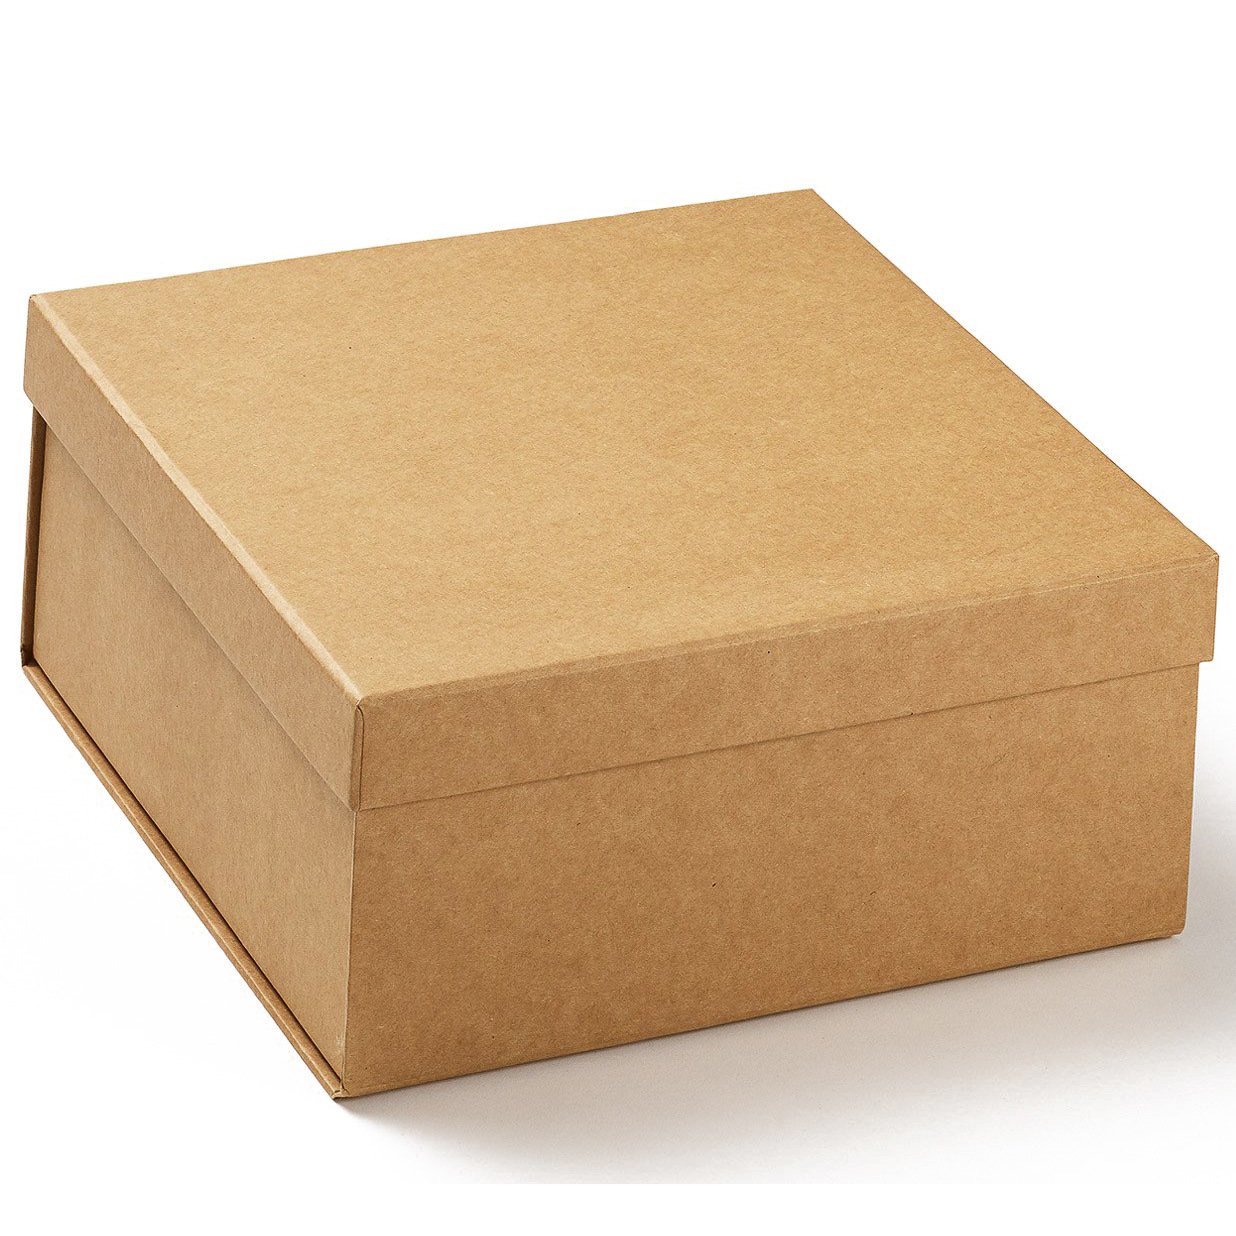 Коробка вид сверху. Картонная коробка. Картонная коробка с крышкой. Коробка для подарка обычная картонная. Крафтовая коробка.